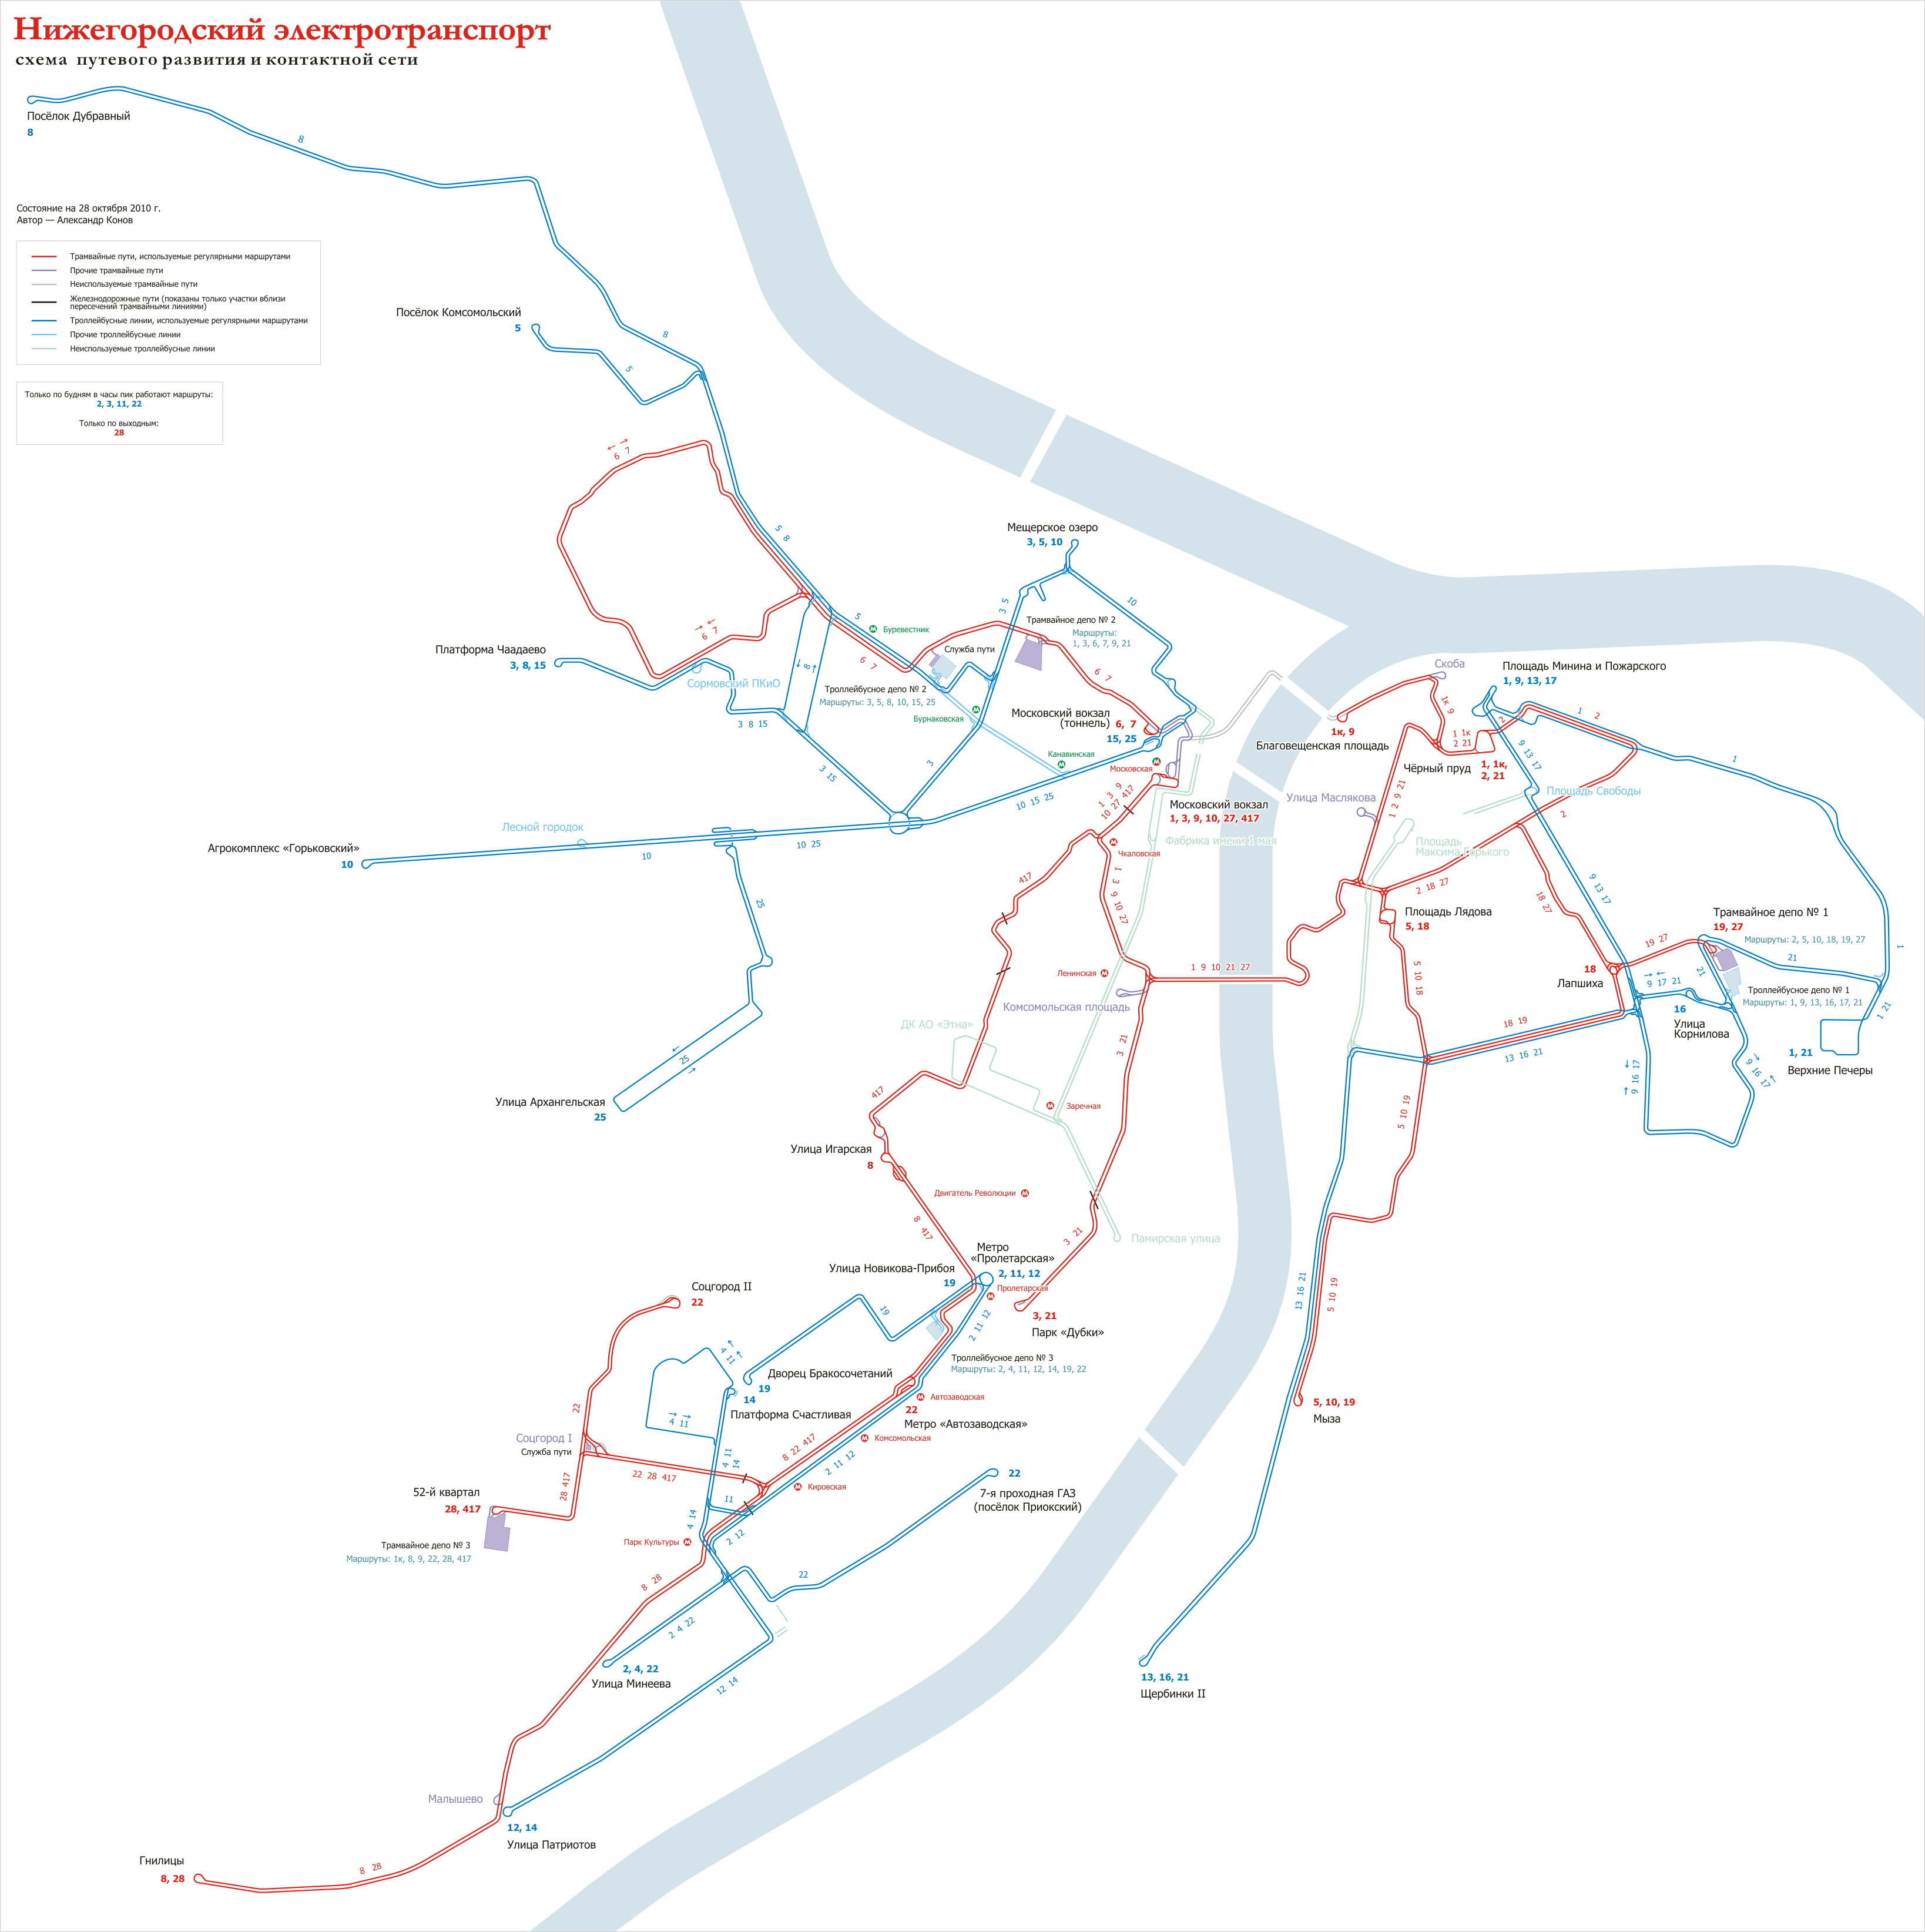 Nyizsnij Novgorod — Maps